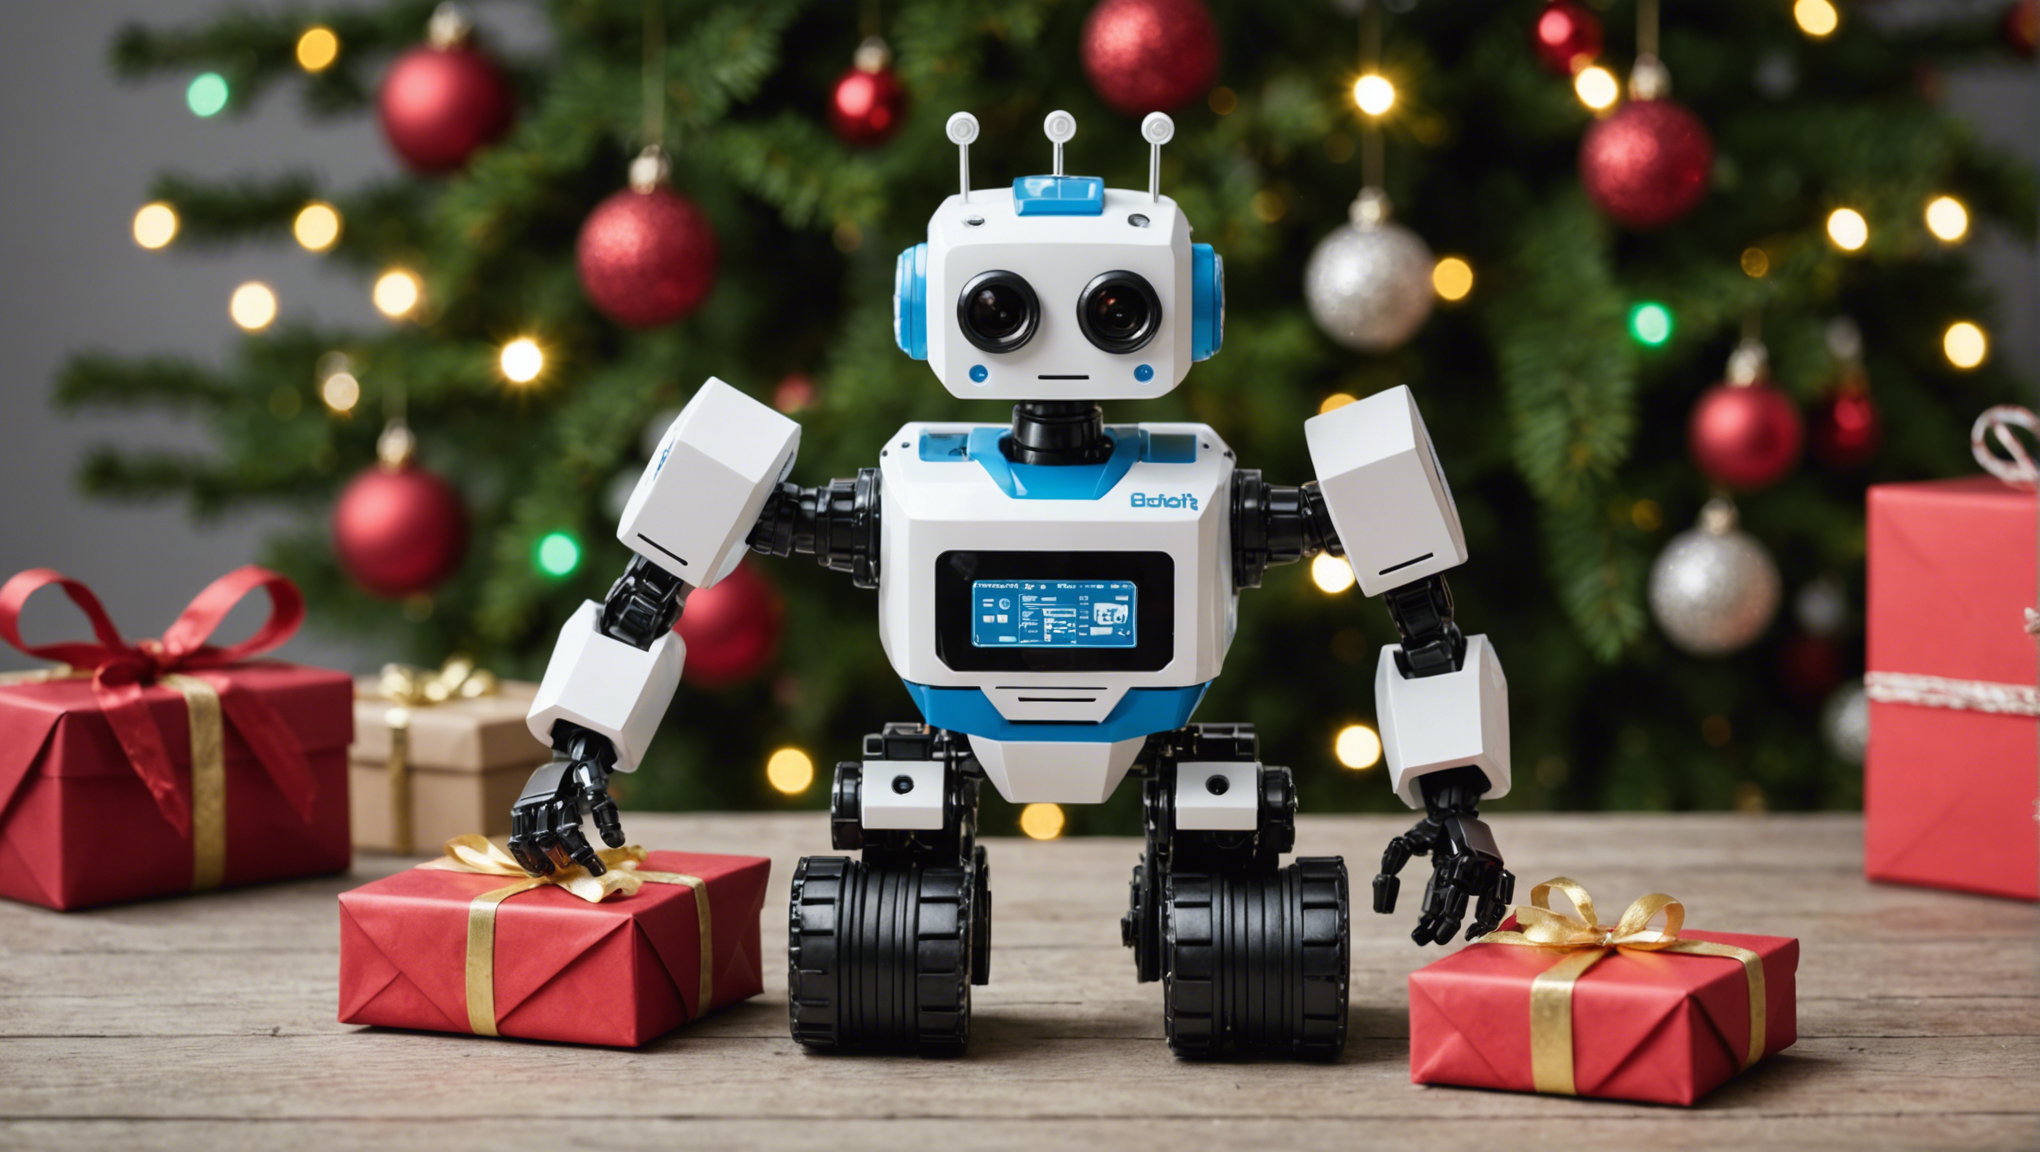 découvrez des idées de cadeaux diy en robotique pour noël 2021 et offrez des moments ludiques et instructifs à vos proches passionnés de technologie.